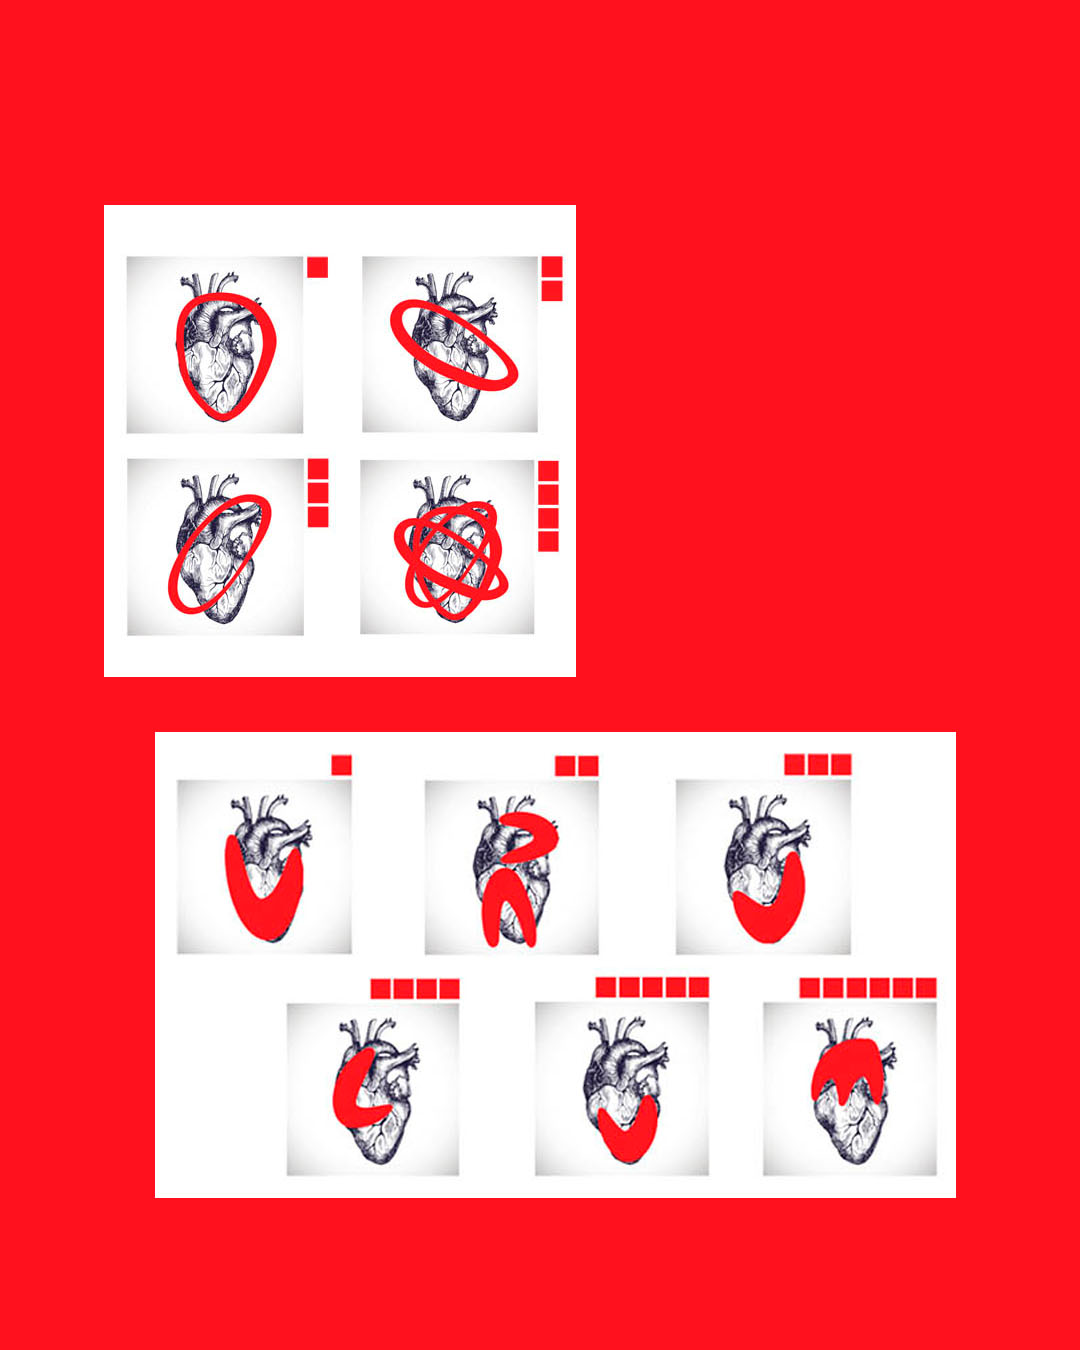 Decomposição da forma de um coração para a construção de ícone e letras para a marca URUCUM.